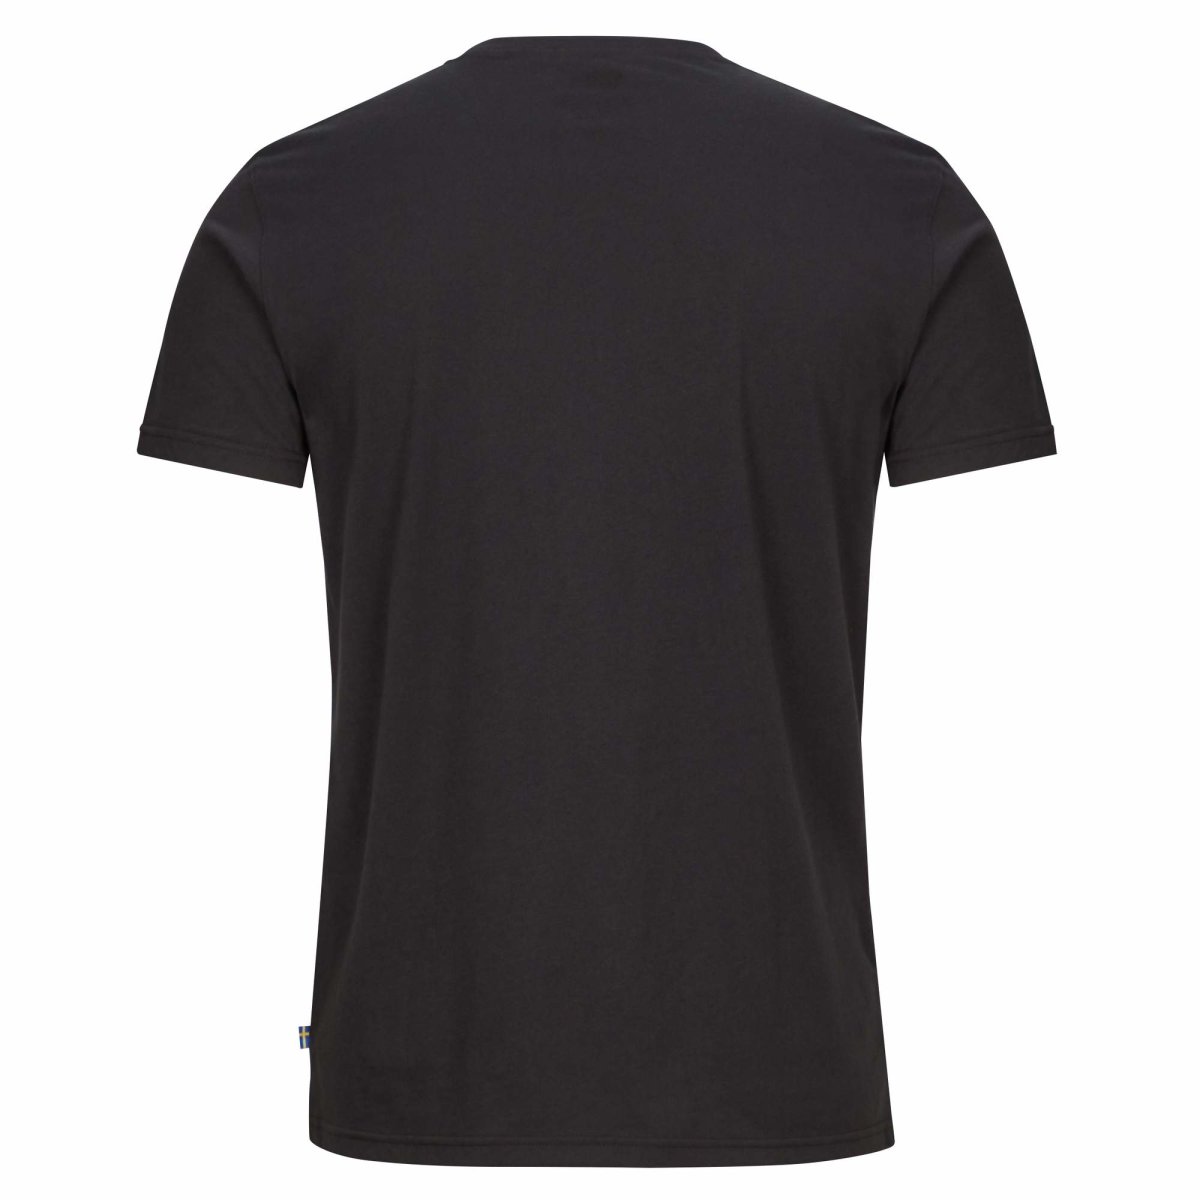 Fj&auml;llr&auml;ven 1960 Logo T-Shirt 87313 black Herren Jersey Brand Shirt